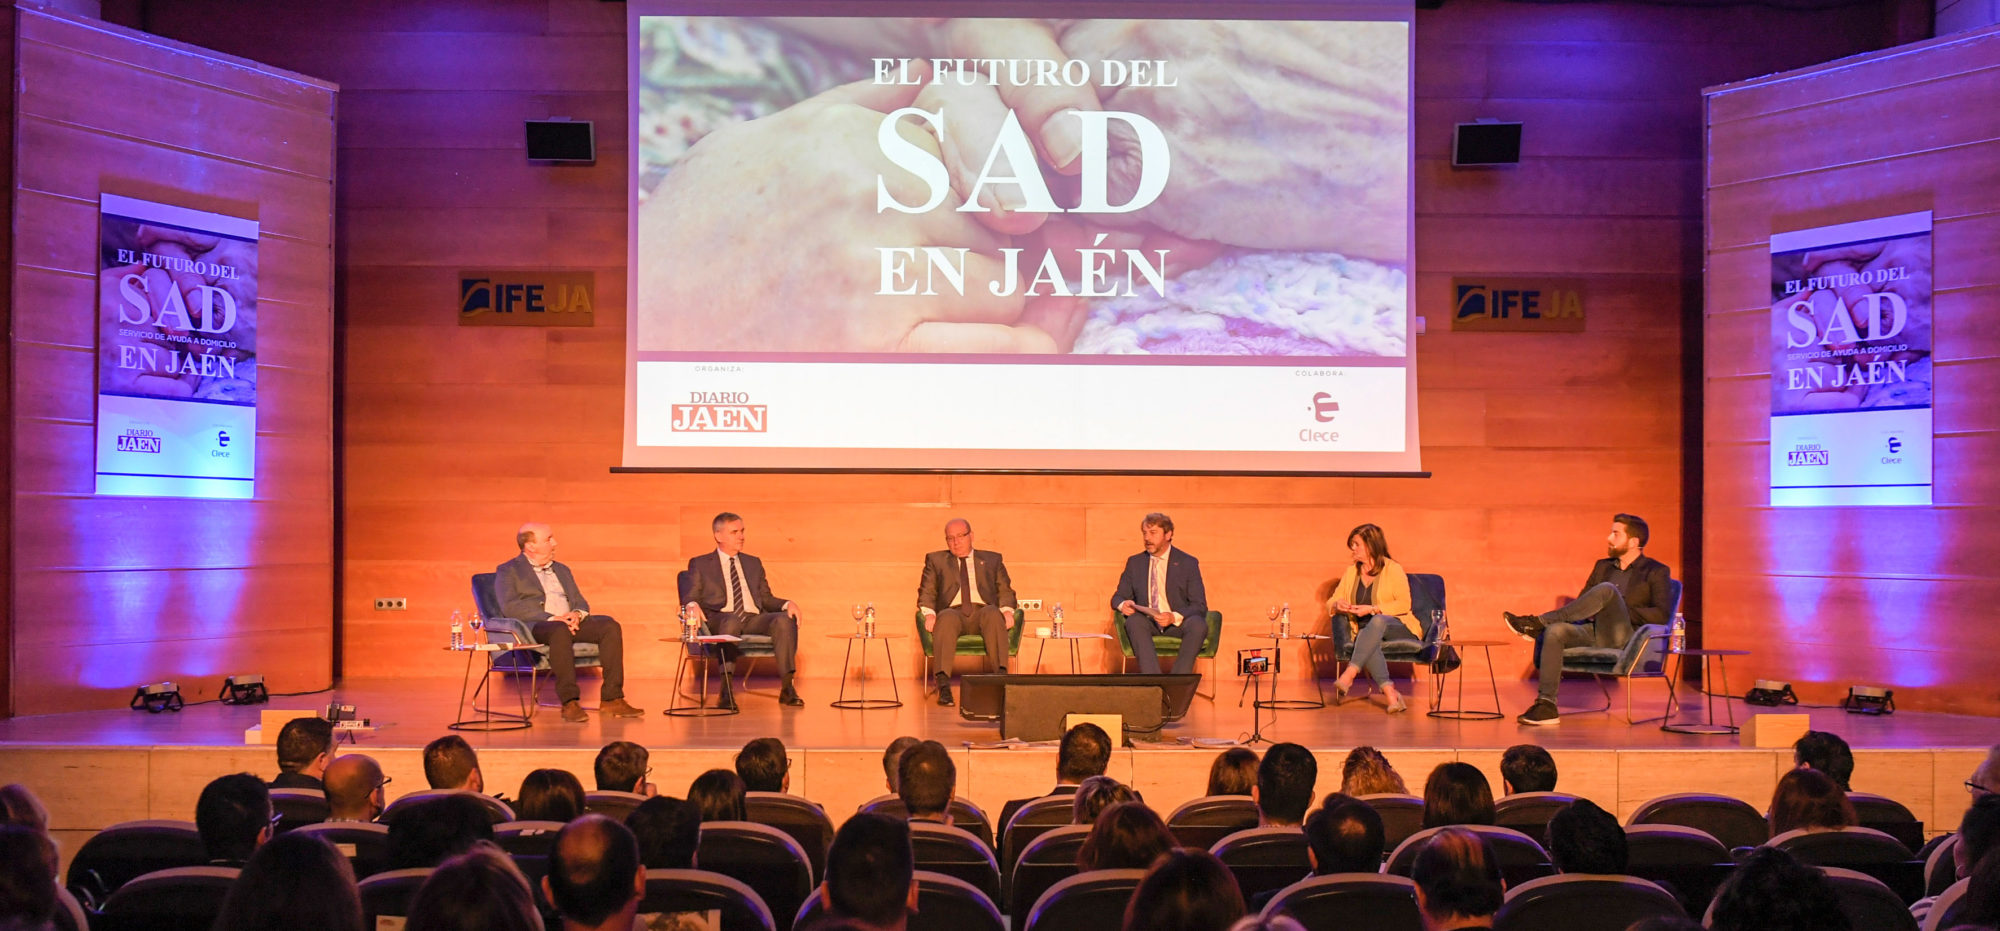 Mayor financiación y dignificación del sector, algunos retos del futuro del SAD debatidos en el Foro de Jaén